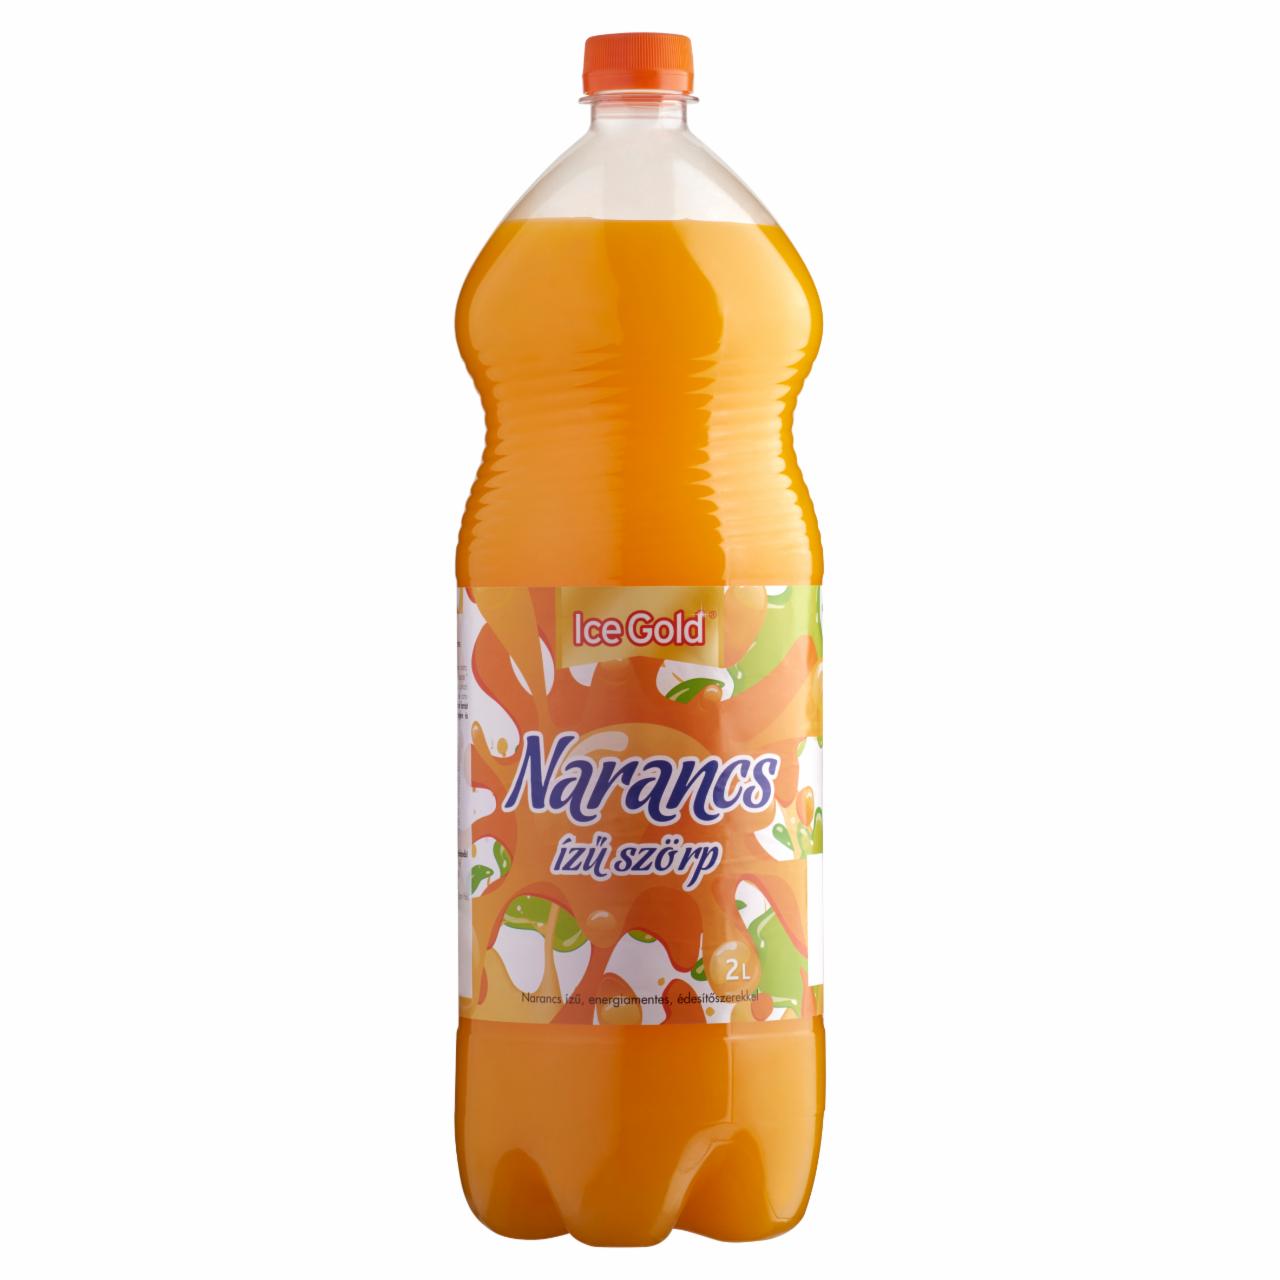 Képek - Ice Gold energiamentes narancs ízű szörp édesítőszerekkel 2 l